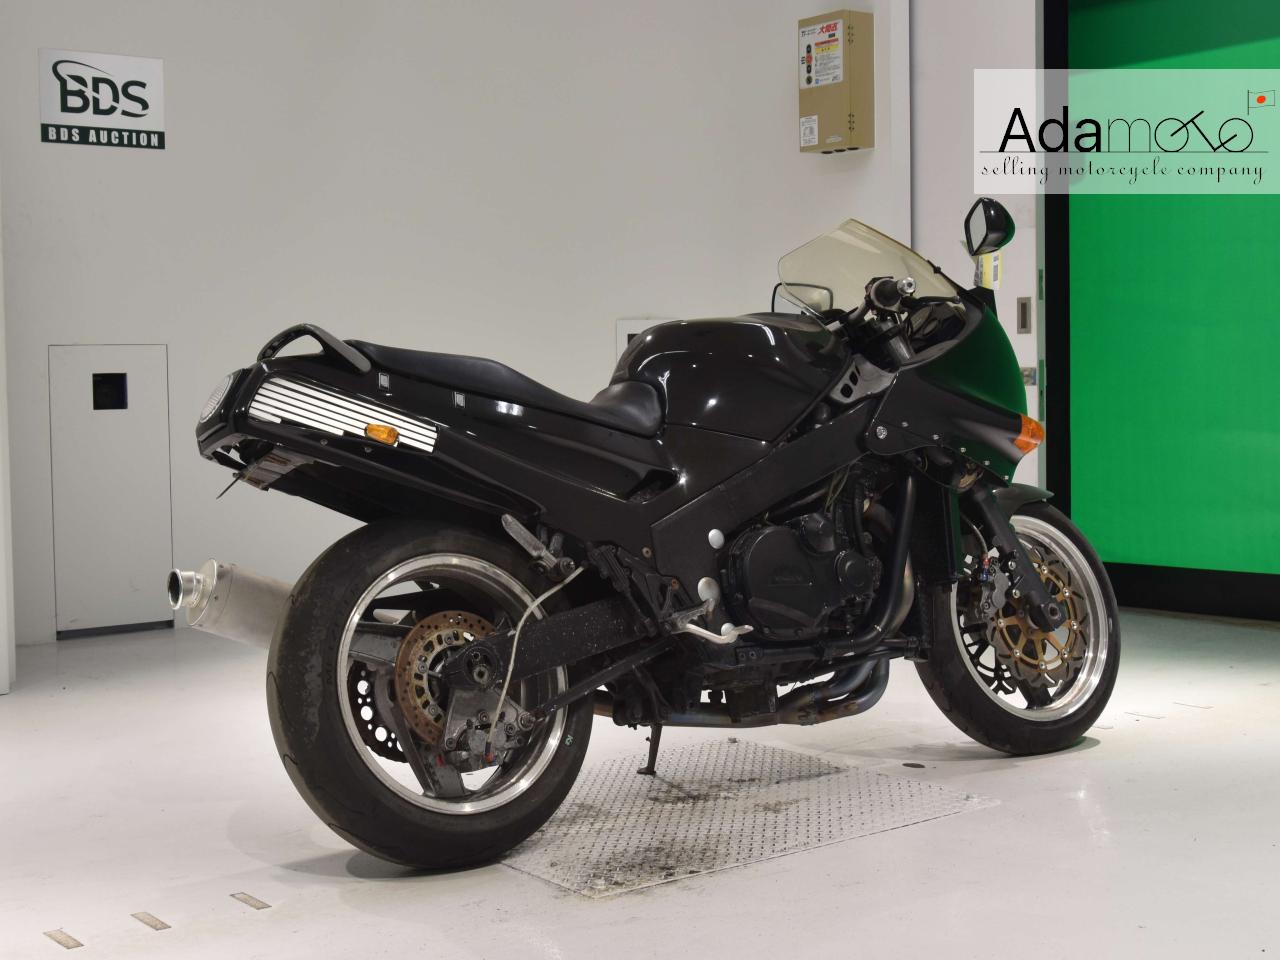 Kawasaki ZX 11 1 - Adamoto - Motorcycles from Japan